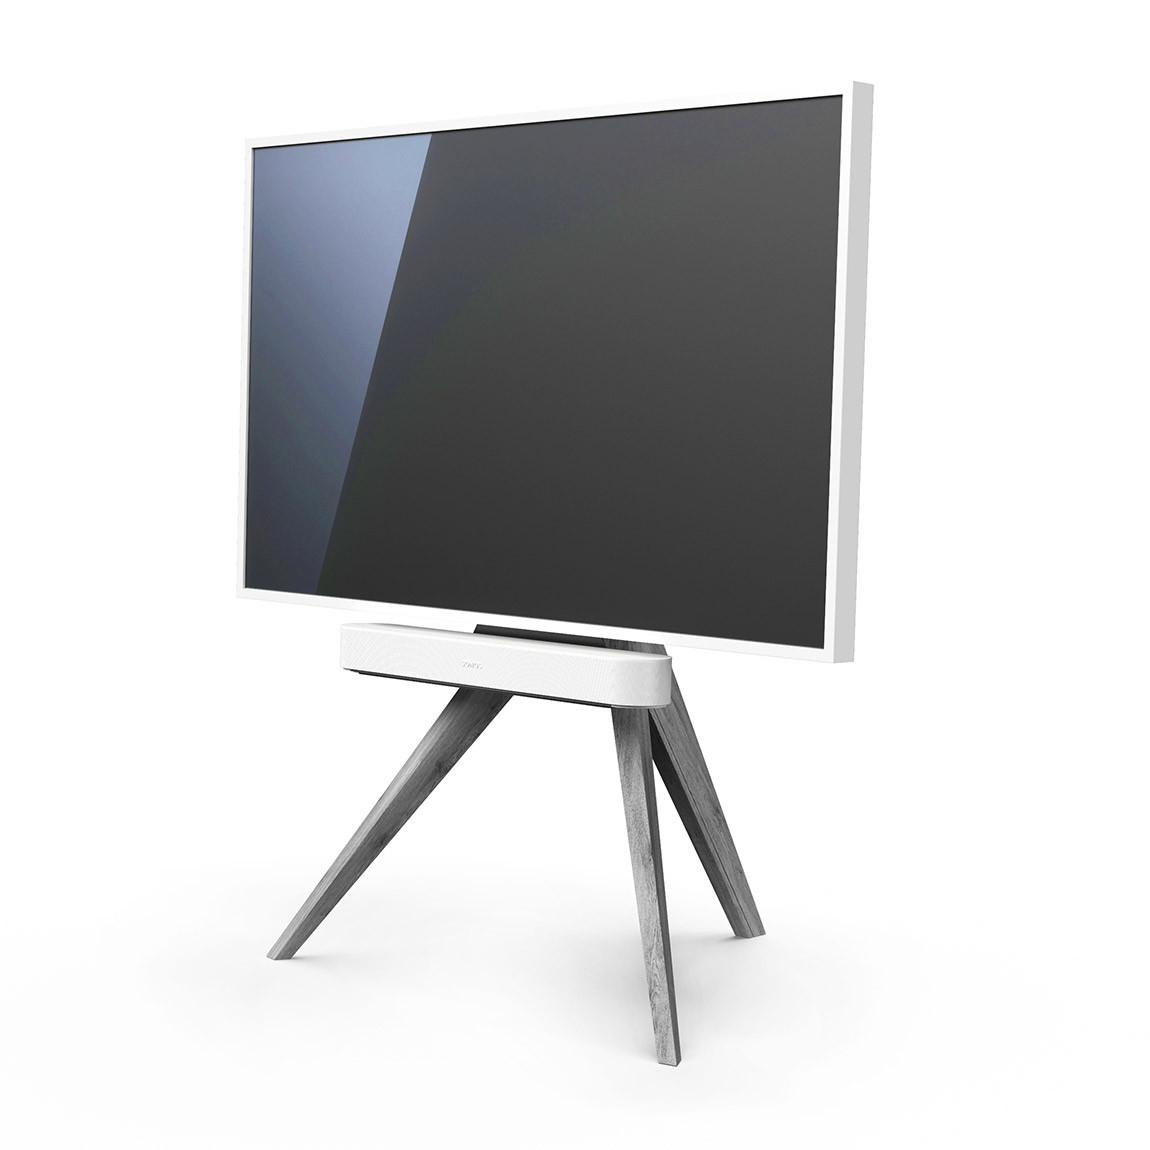 Spectral Art AX TV-Stand - Eiche grau mit Fernseher und Sonos Beam schräge Ansicht